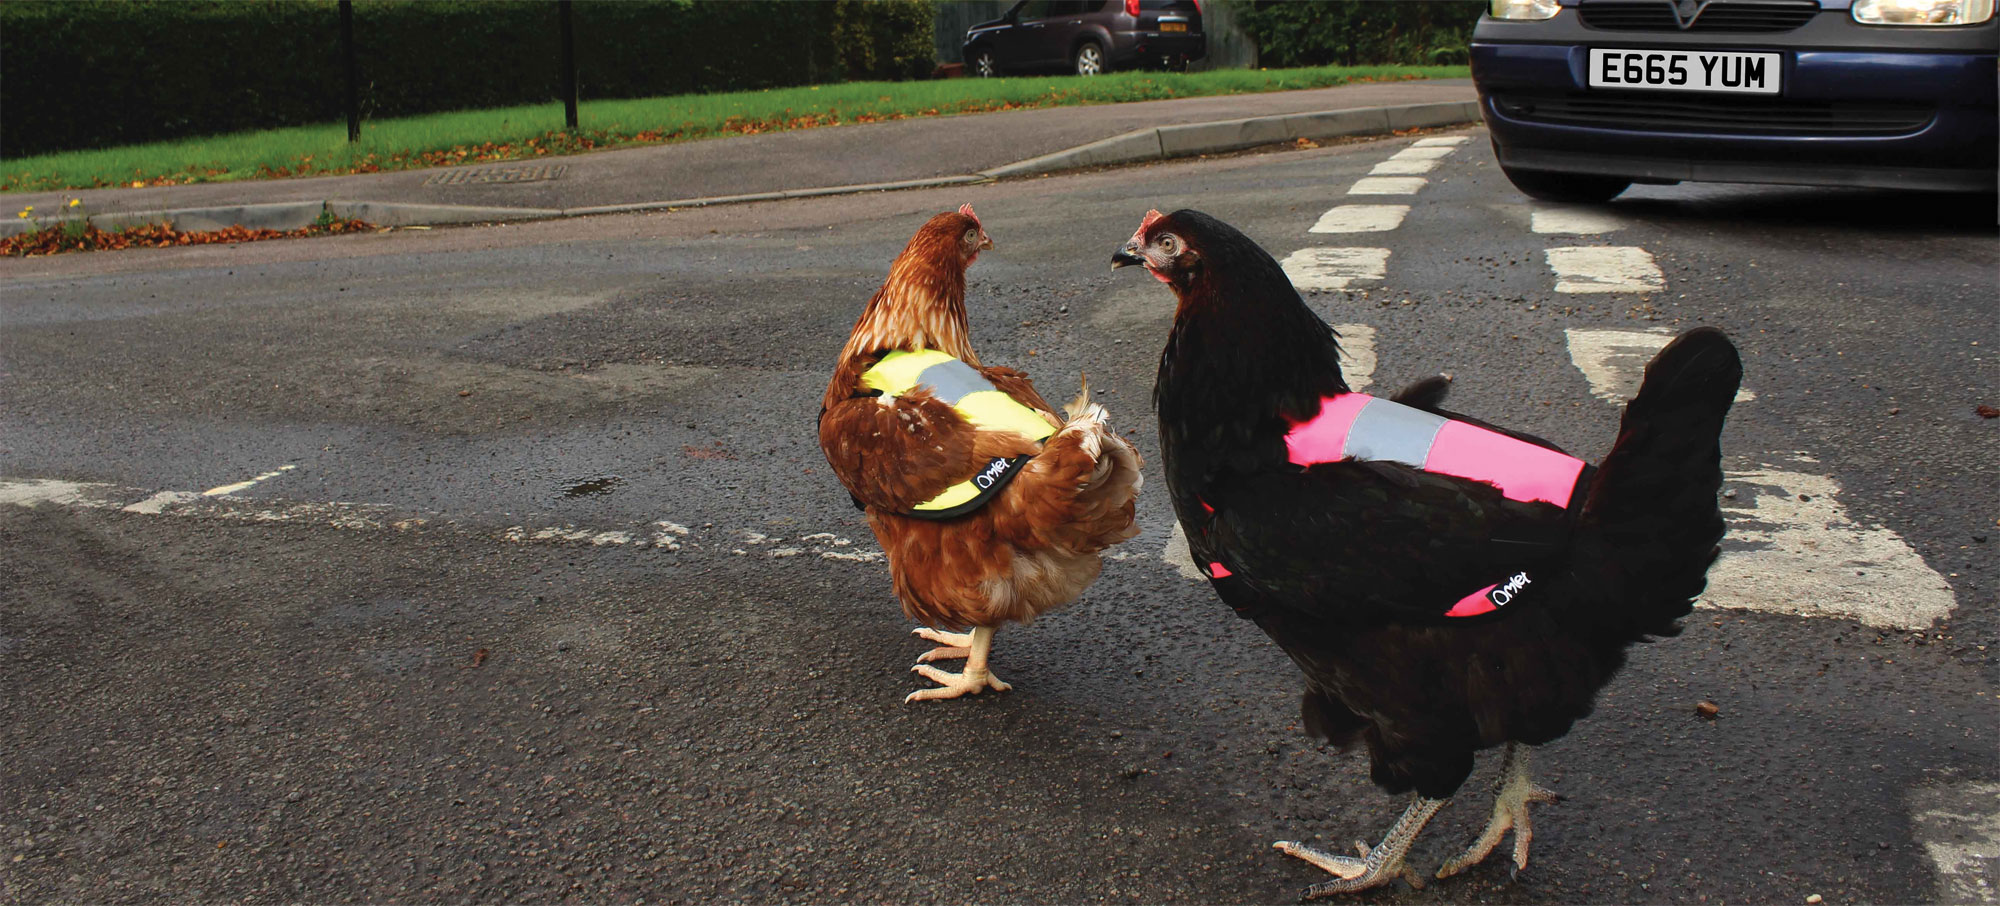 Зачем курице дорожный жилет. Это не британская шутка, а реальное британское явление, удивившее интернет